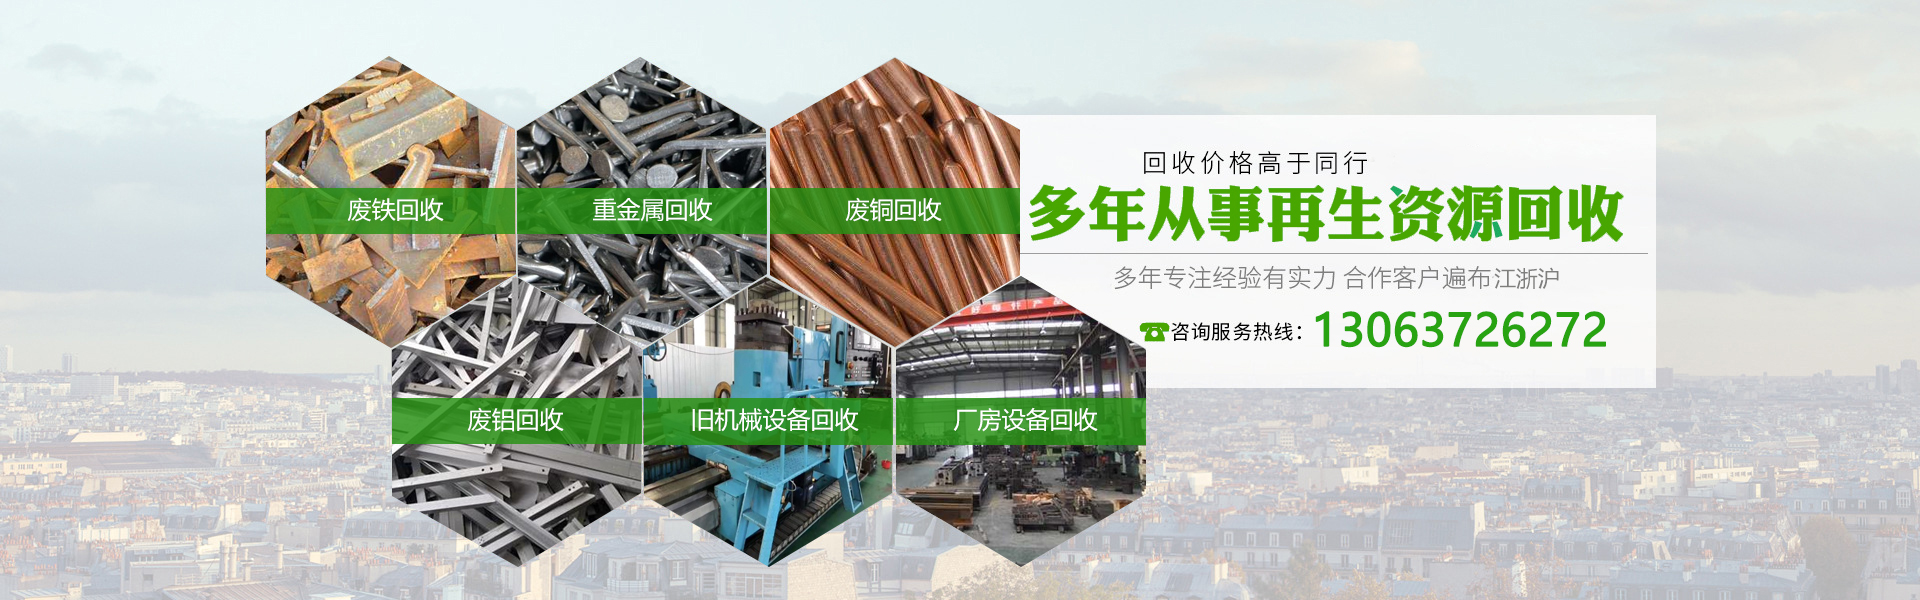 上海廢鐵回收